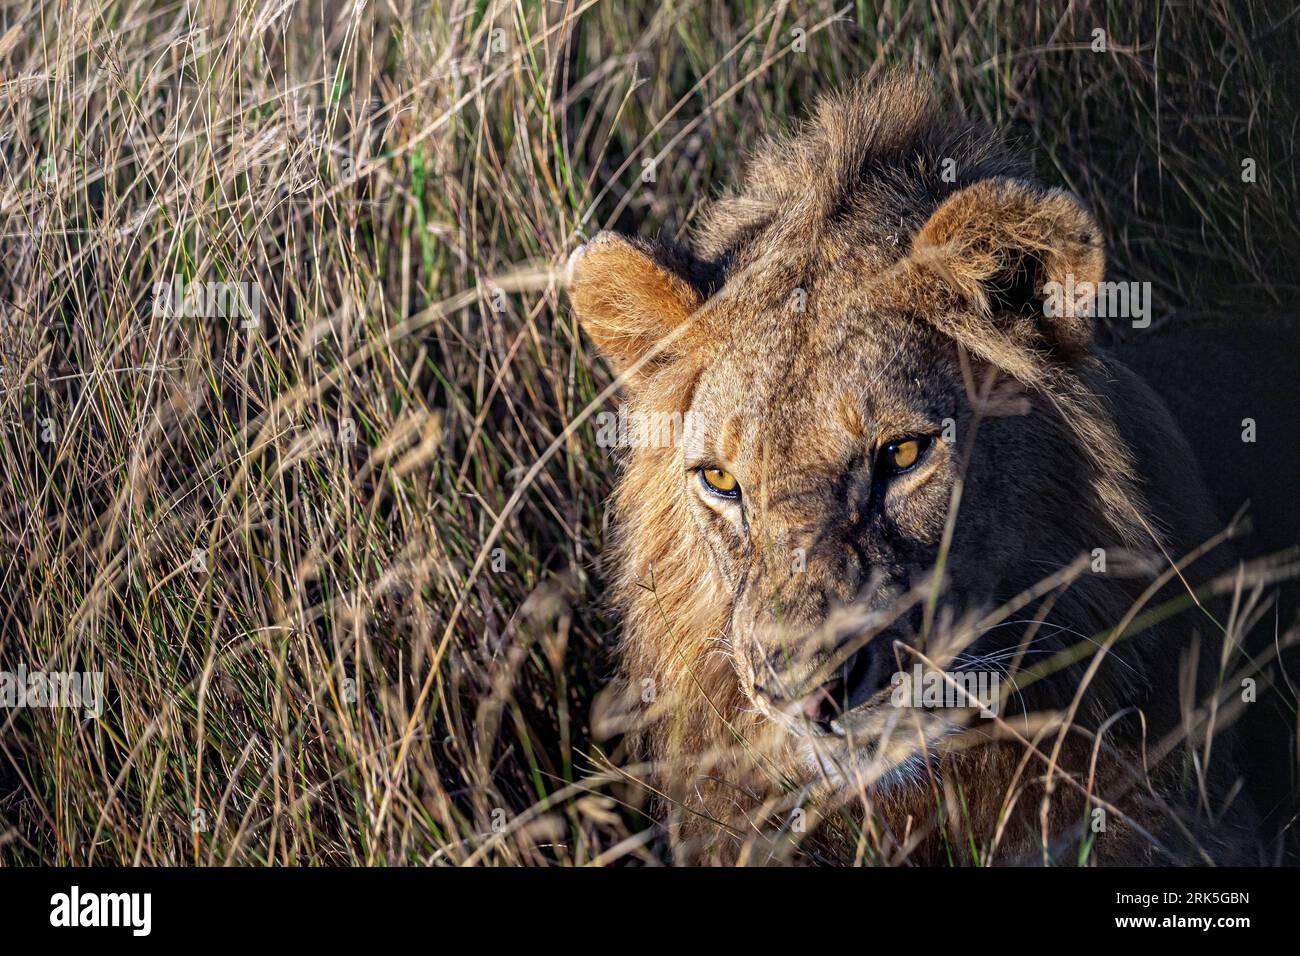 Un lion majestueux debout dans une zone herbeuse Banque D'Images